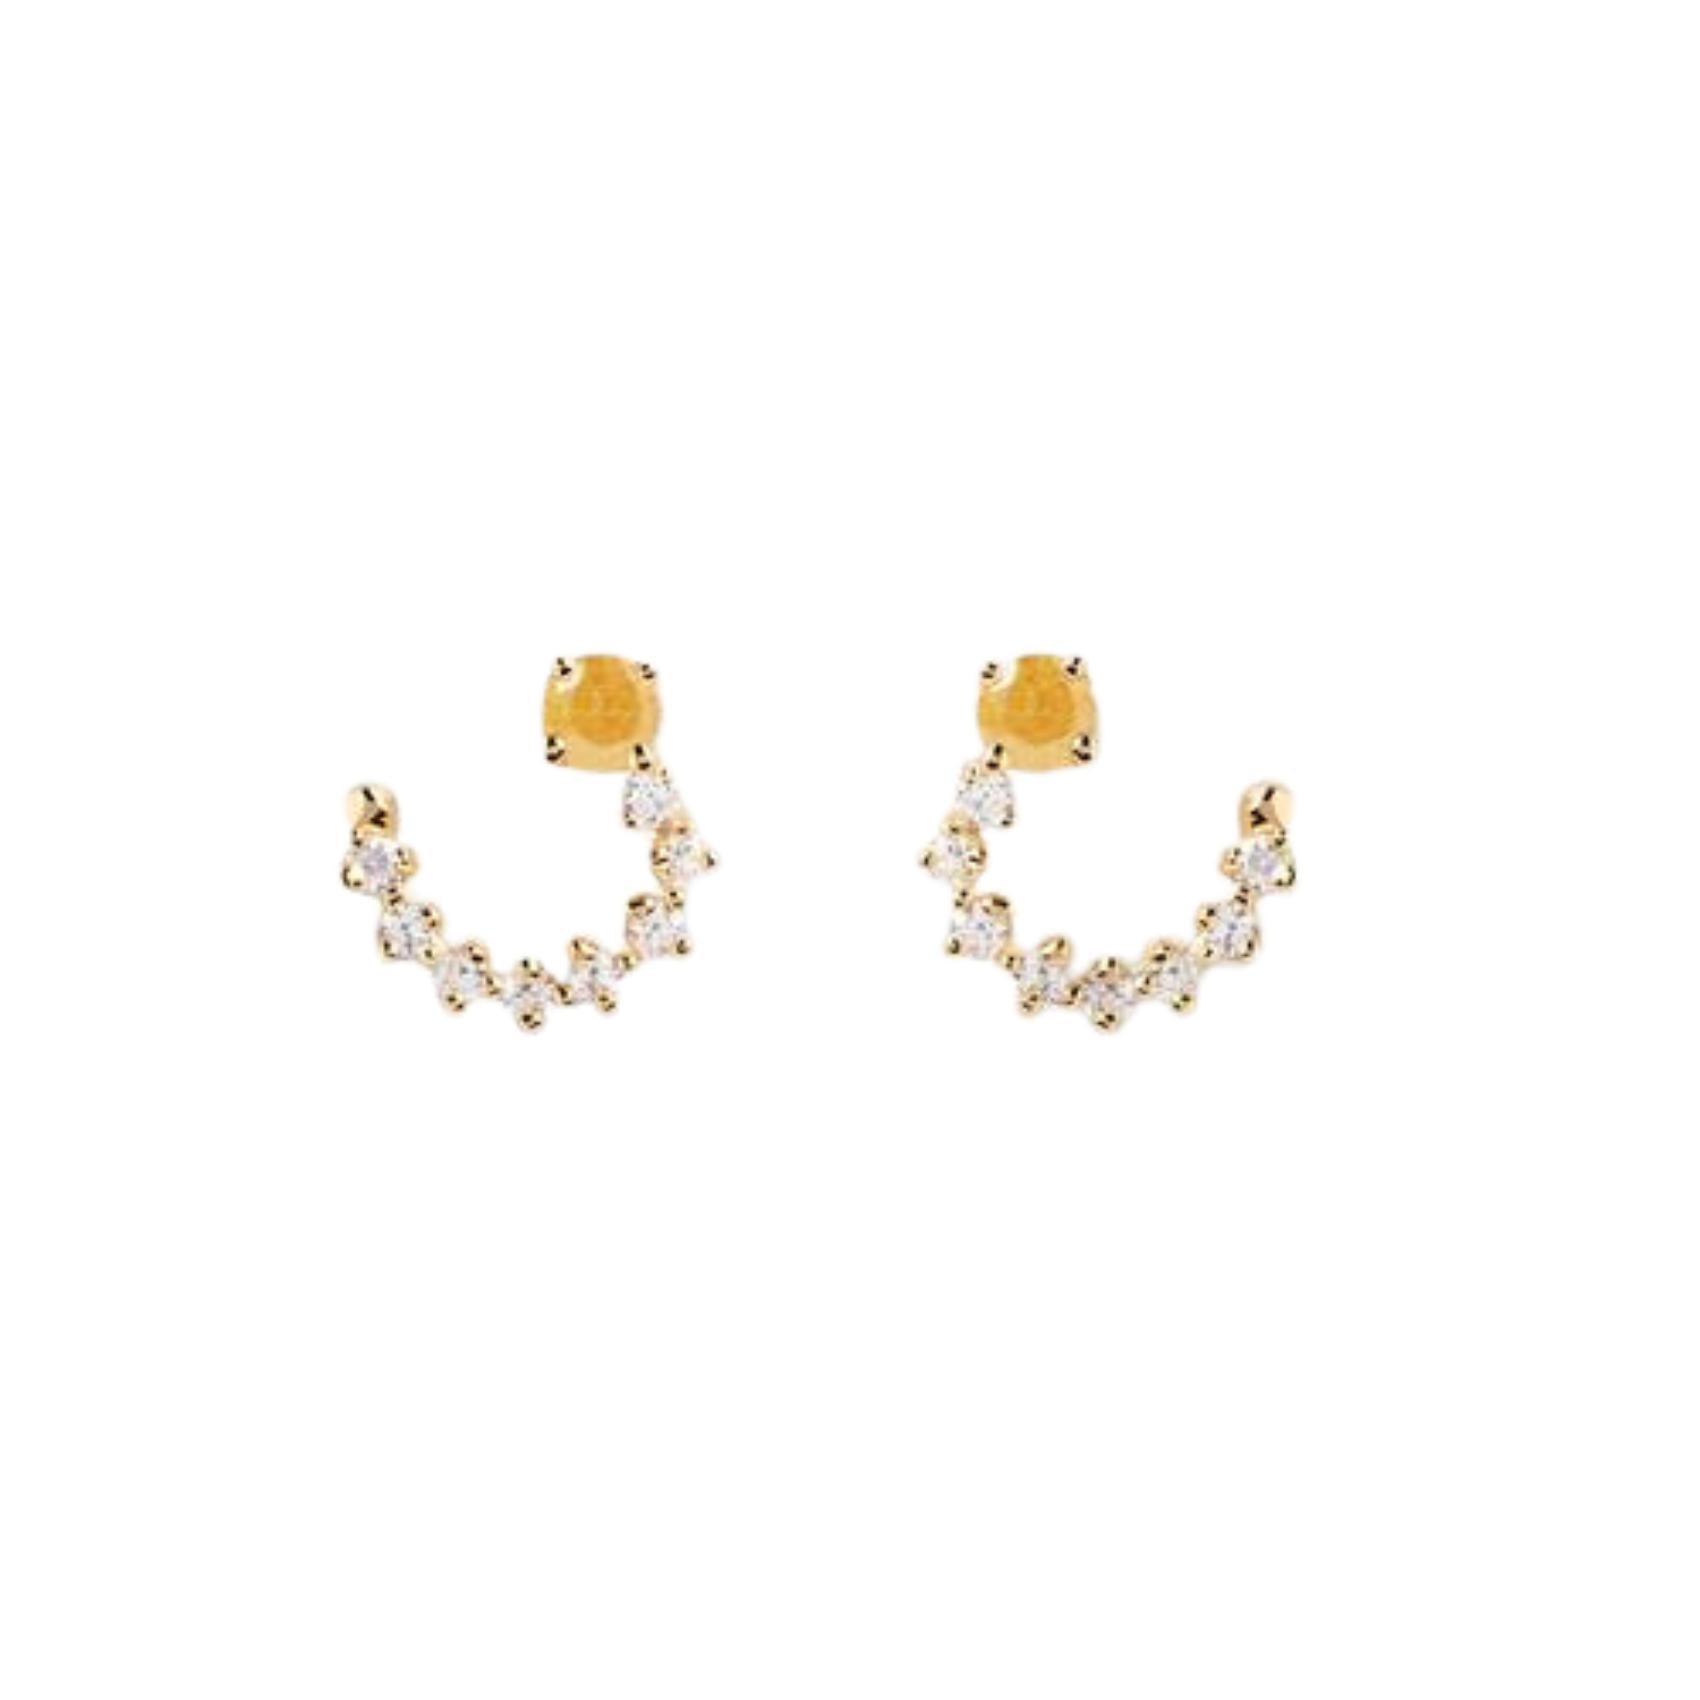 Γυναικεία καρφωτά σκουλαρίκια PDPAOLA AR01-558-U  κατασκευασμένα από επιχρυσωμένο ασήμι 925 σε ημικύκλιο σχήμα, διακοσμημένα με κίτρινο και λευκό ζιργκόν.